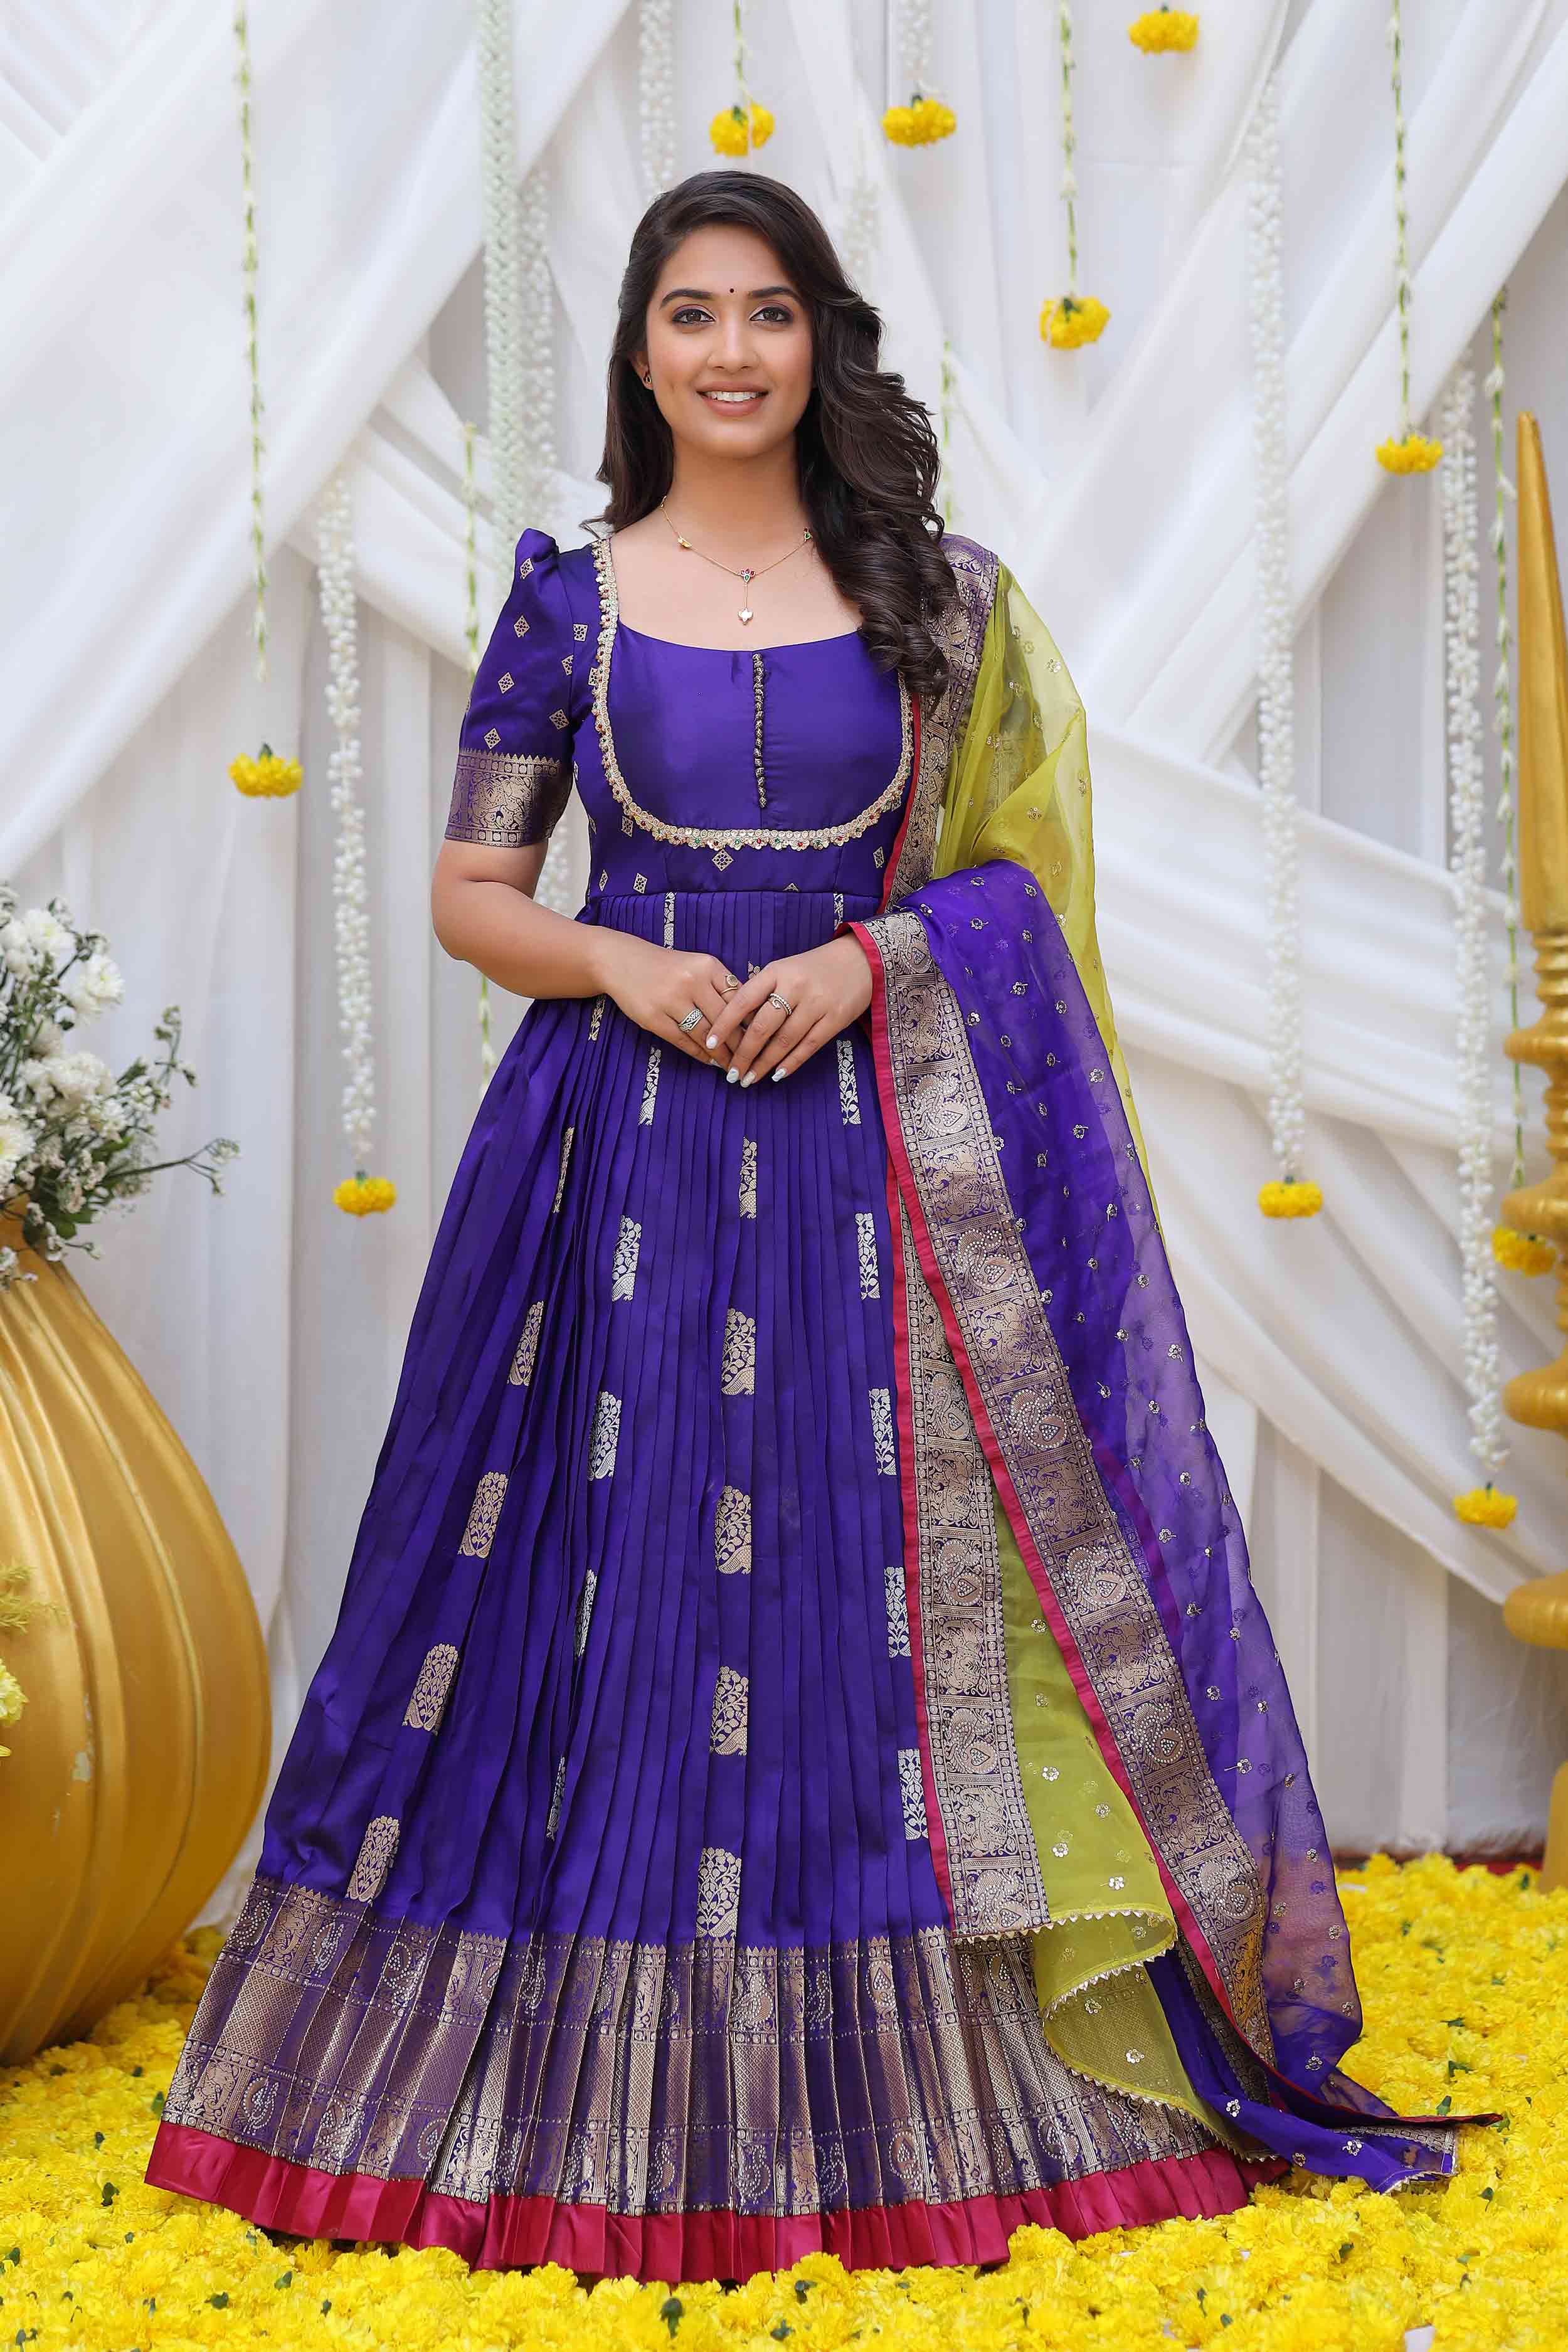 Queen Blue Kanchi Border Pattu Anarkali dress